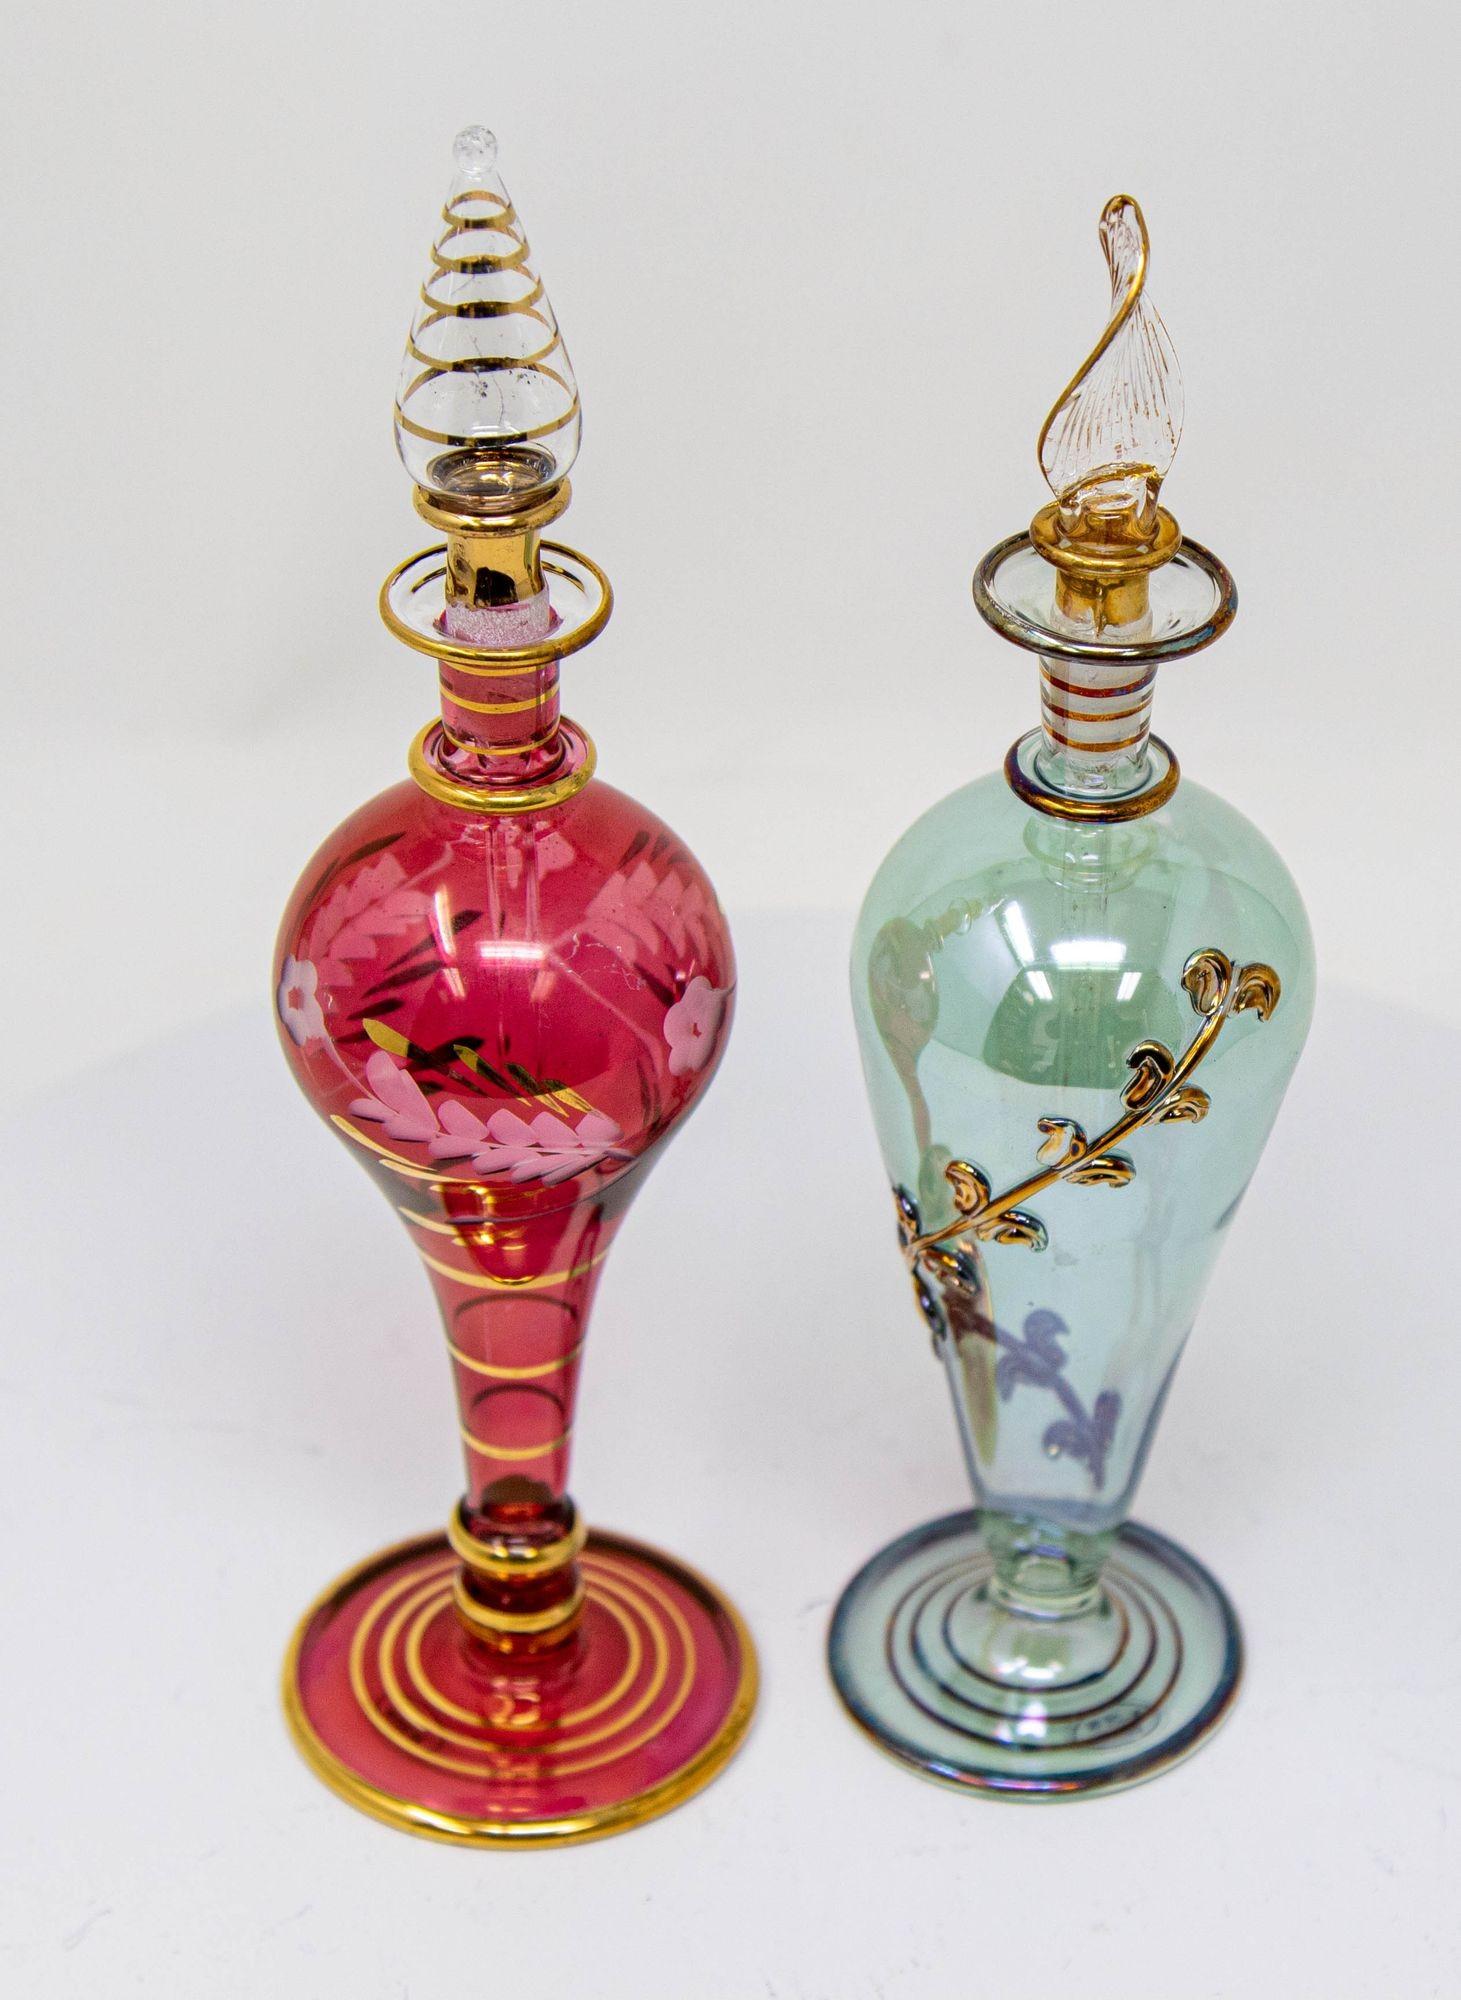 Satz von 2 ägyptischen Parfümflaschen aus Kunstglas 1980er Jahre.
Handgefertigter ägyptischer Kunstglas-Parfümflakon aus vergoldetem Glas.
Ägyptische Parfümflaschen Satz von zwei mundgeblasenen bunten dekorativen mehrfarbigen